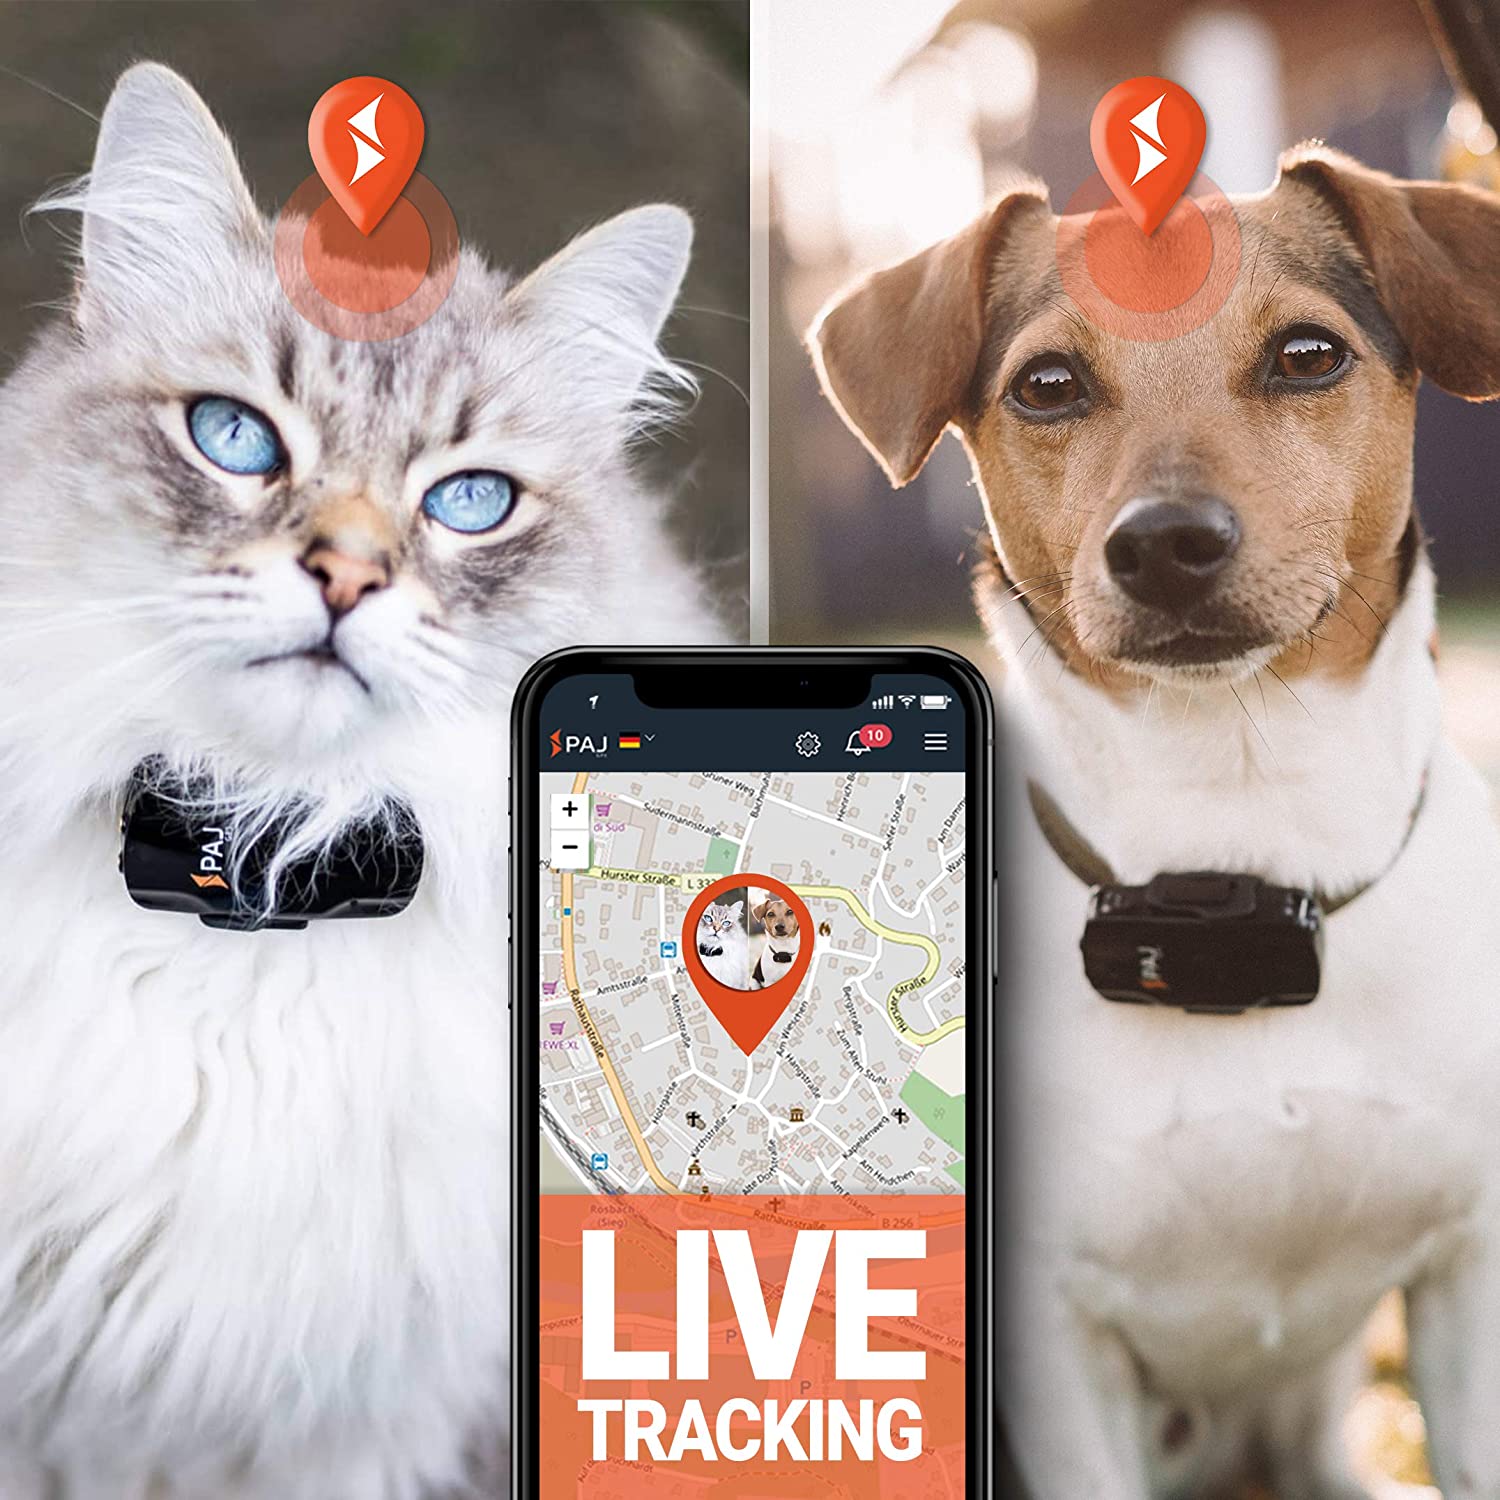  PAJ GPS Pet Finder GPS Tracker Mini Protege Perros y Gatos Resistente al Agua 2 días de duración de la batería (3 días Modo de Espera) Rastreo en Vivo 